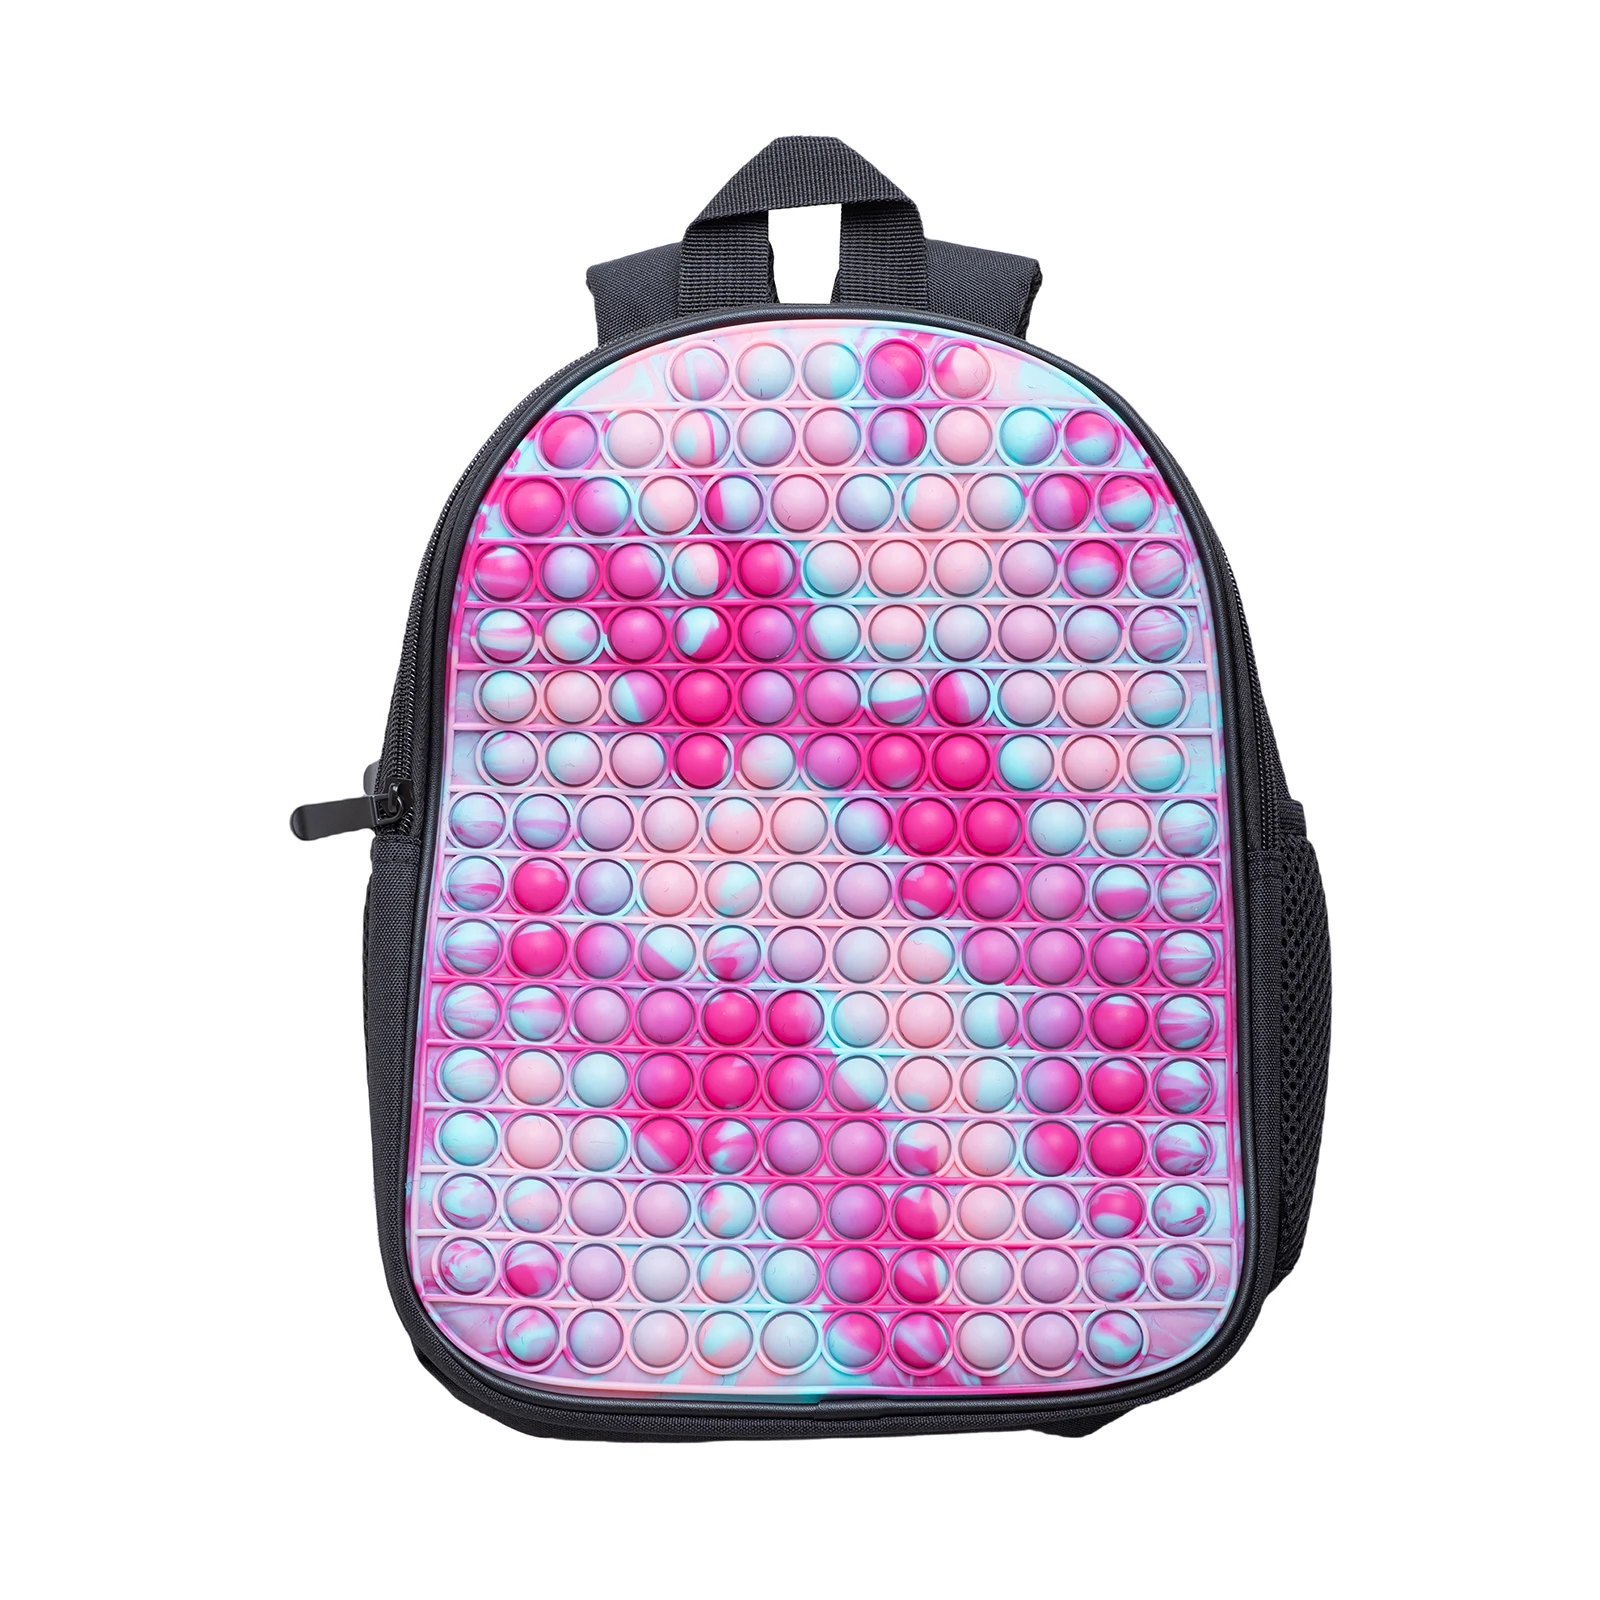 Новый брендовый рюкзак Pop-On-It Decom press ion Toys Bubble Fidget школьные сумки для детей подростков девочек/мальчиков рождественские подарки